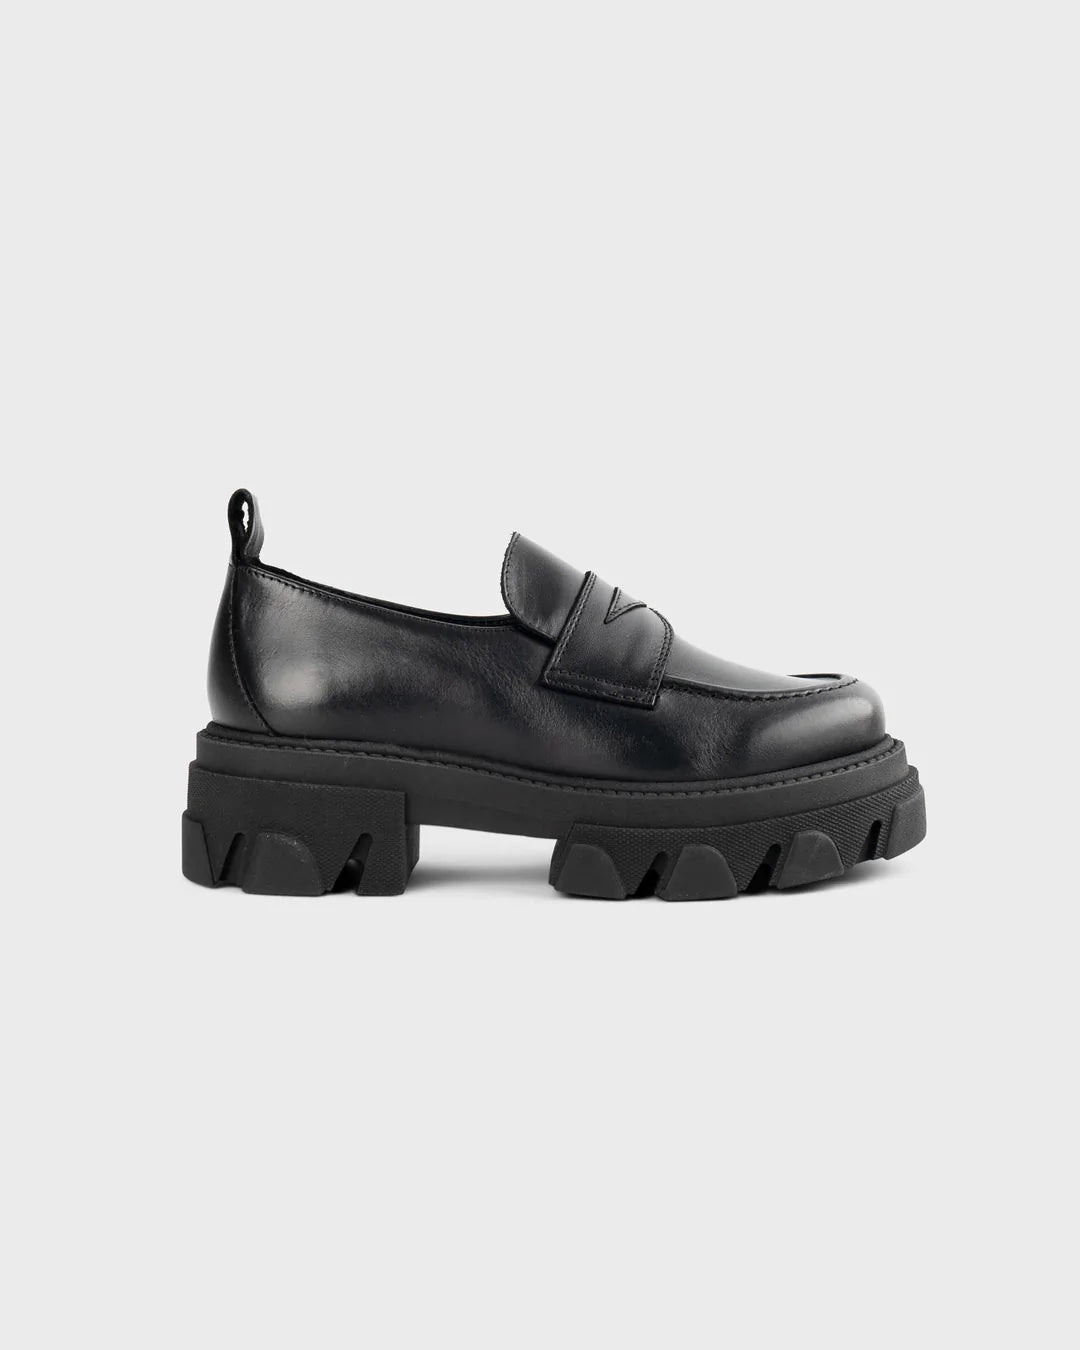 Schuhe  - Moderner Loafer Ayo von Shoebiz Copenhagen